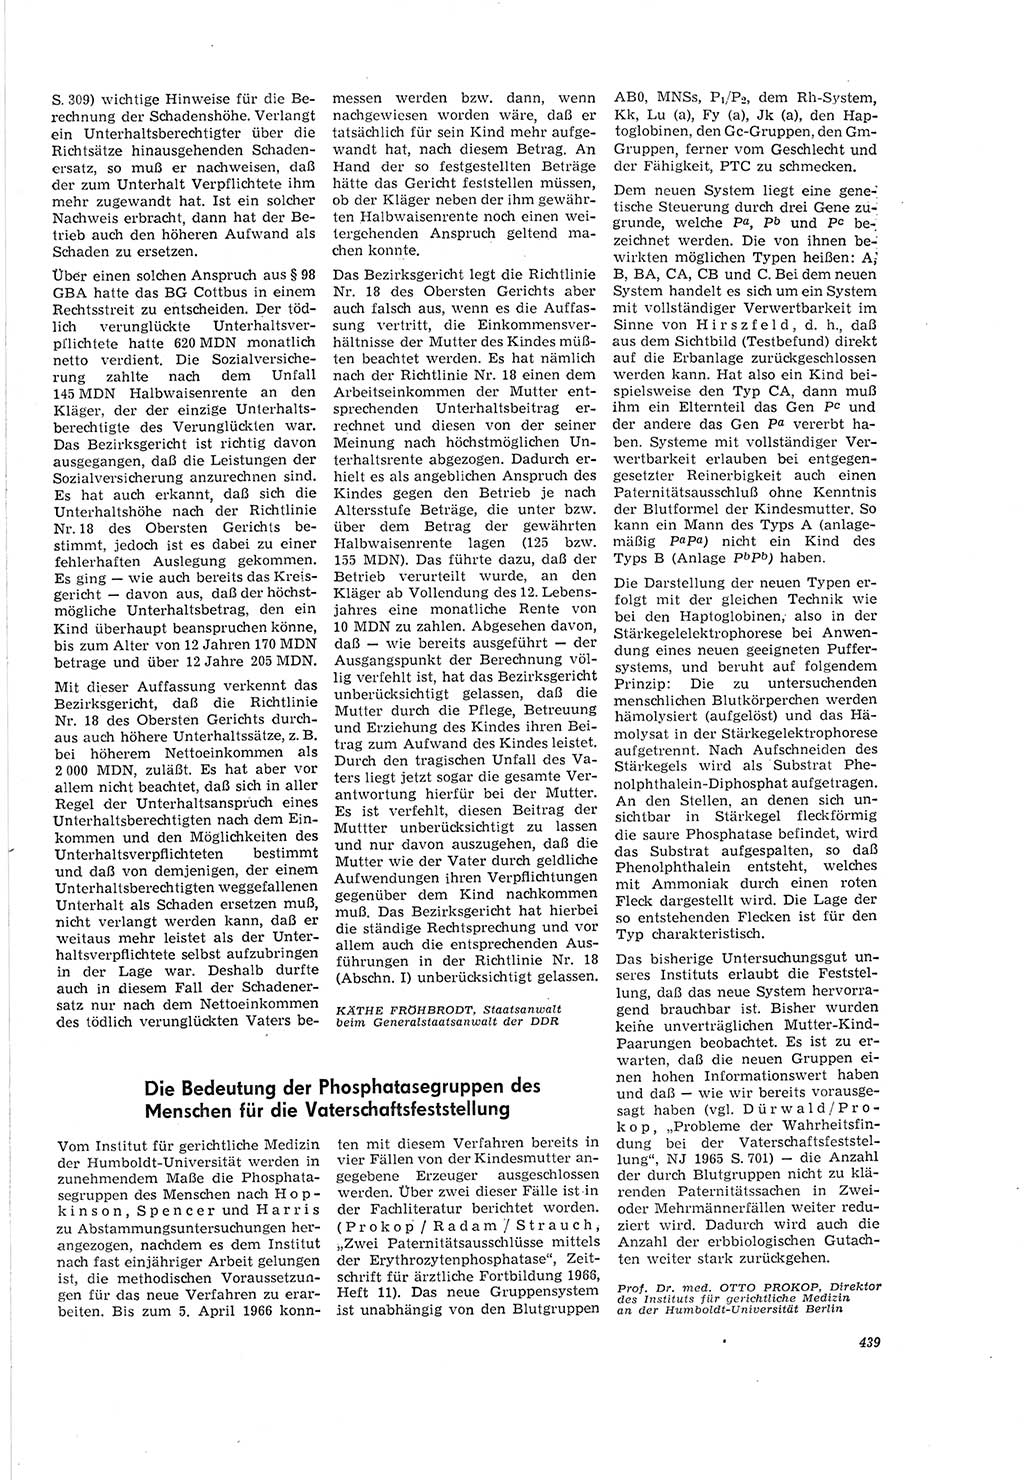 Neue Justiz (NJ), Zeitschrift für Recht und Rechtswissenschaft [Deutsche Demokratische Republik (DDR)], 20. Jahrgang 1966, Seite 439 (NJ DDR 1966, S. 439)